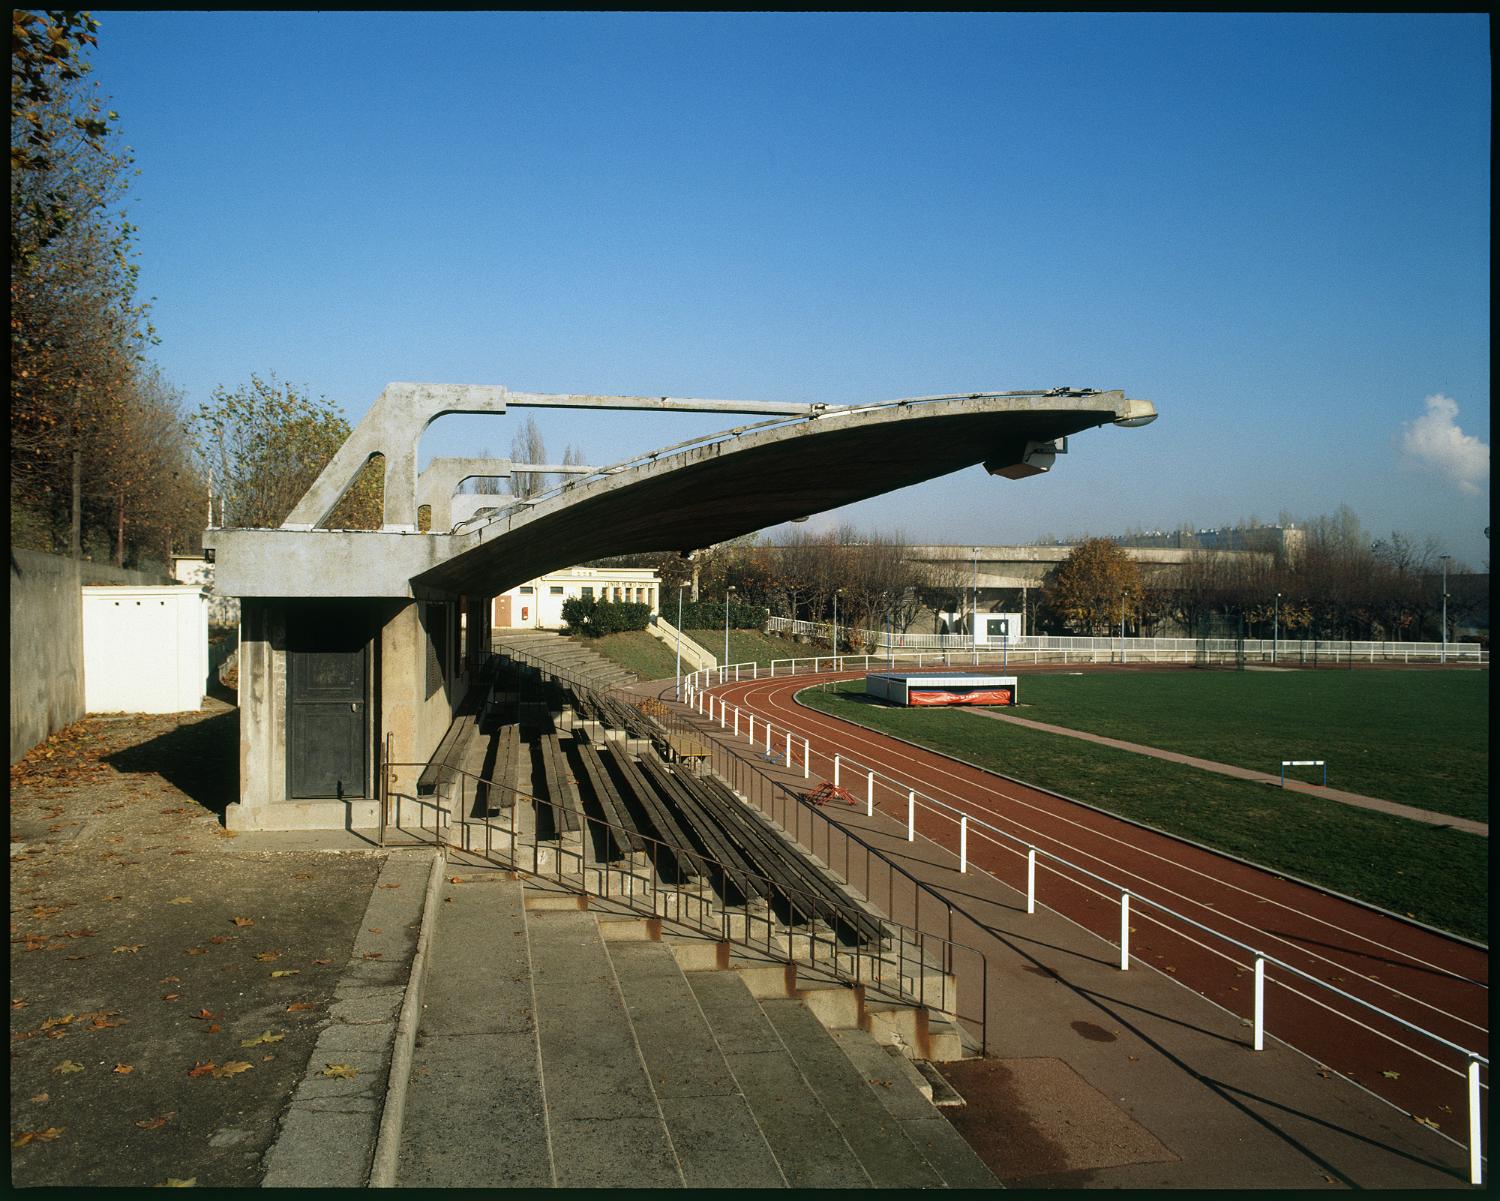 Complexe sportif dit stade de la croix de Berny, ou Union sportive métropolitaine